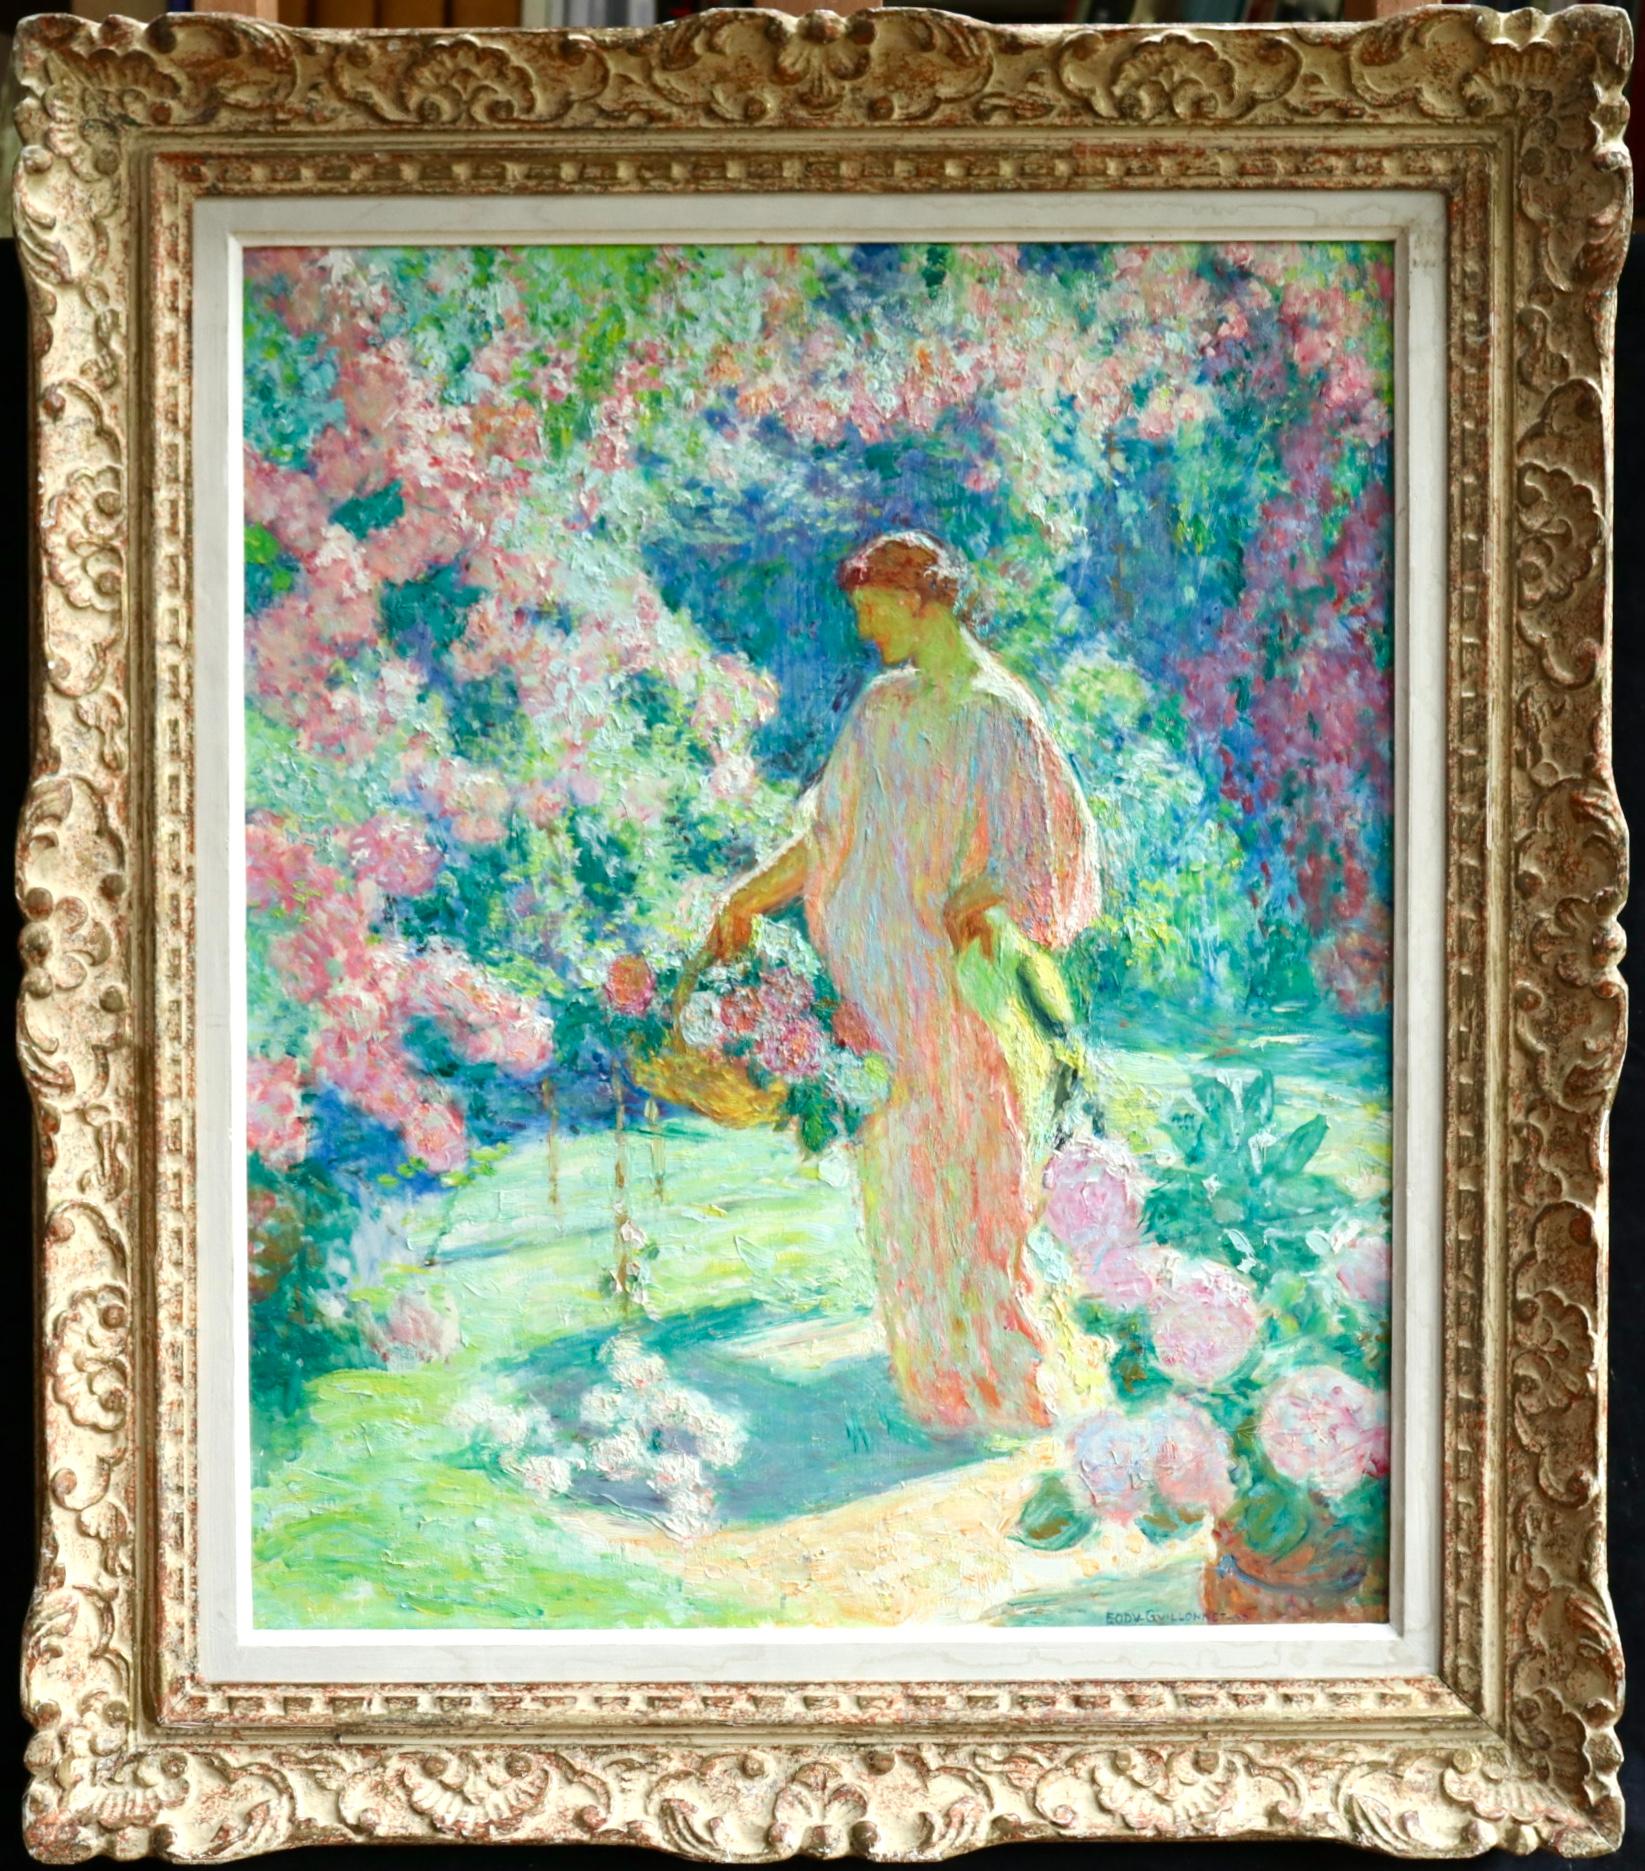 Octave Guillonnet Figurative Painting - Dans le jardin - 20th Century Oil, Woman in Garden Landscape by EODV Guillonnet